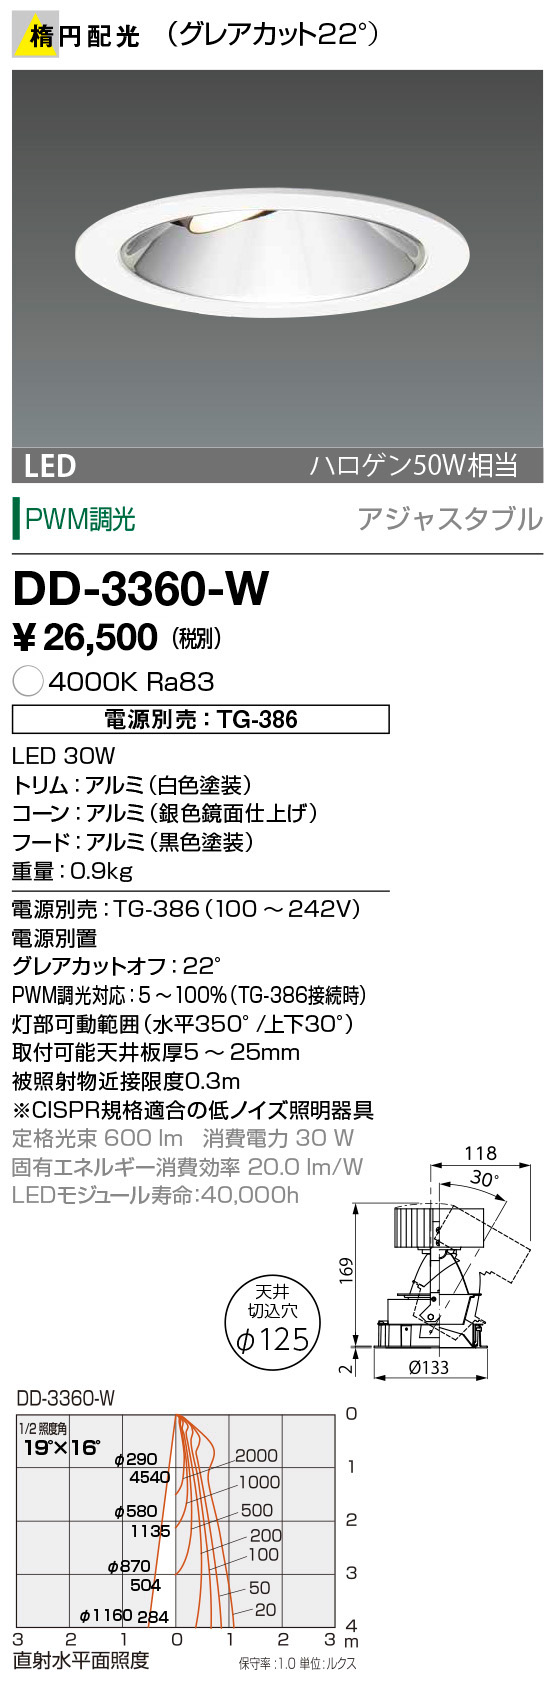 DD-3360-W